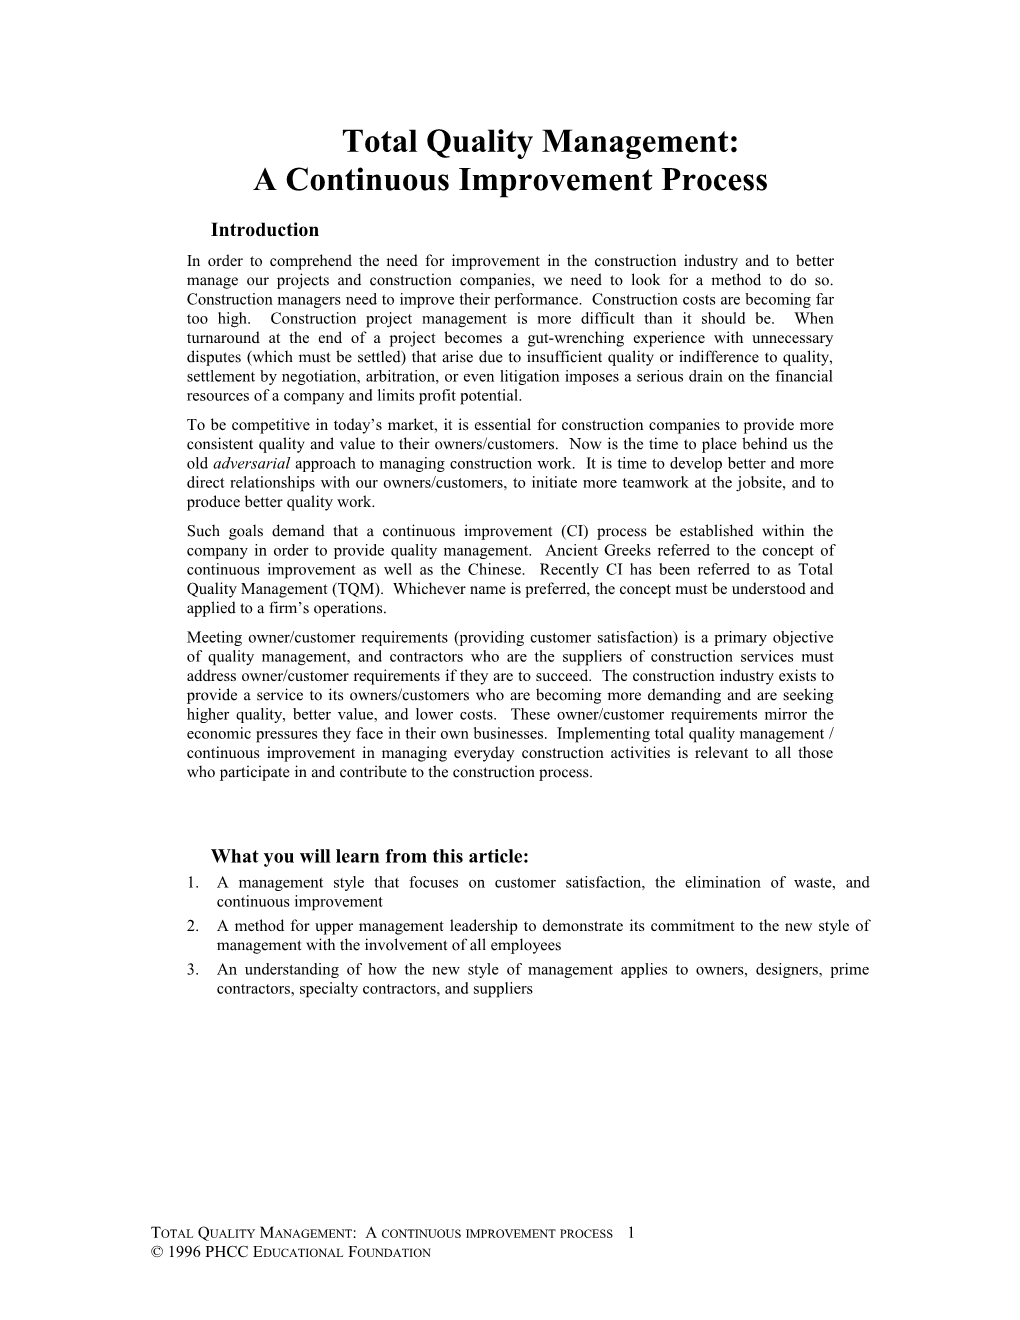 Total Quality Management:A Continuous Improvement Process